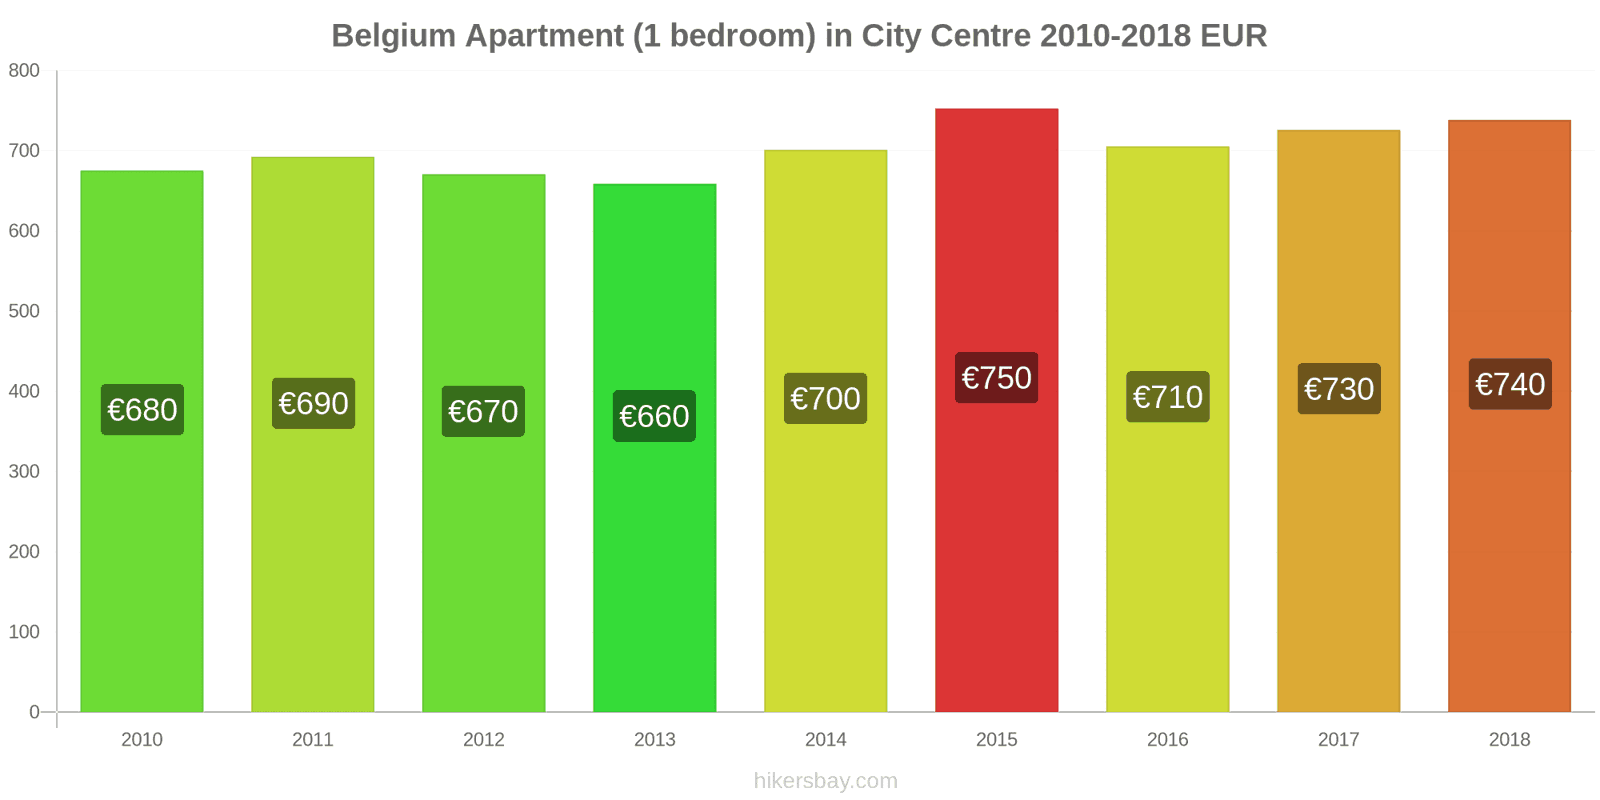 Belgium price changes Apartment (1 bedroom) in city centre hikersbay.com